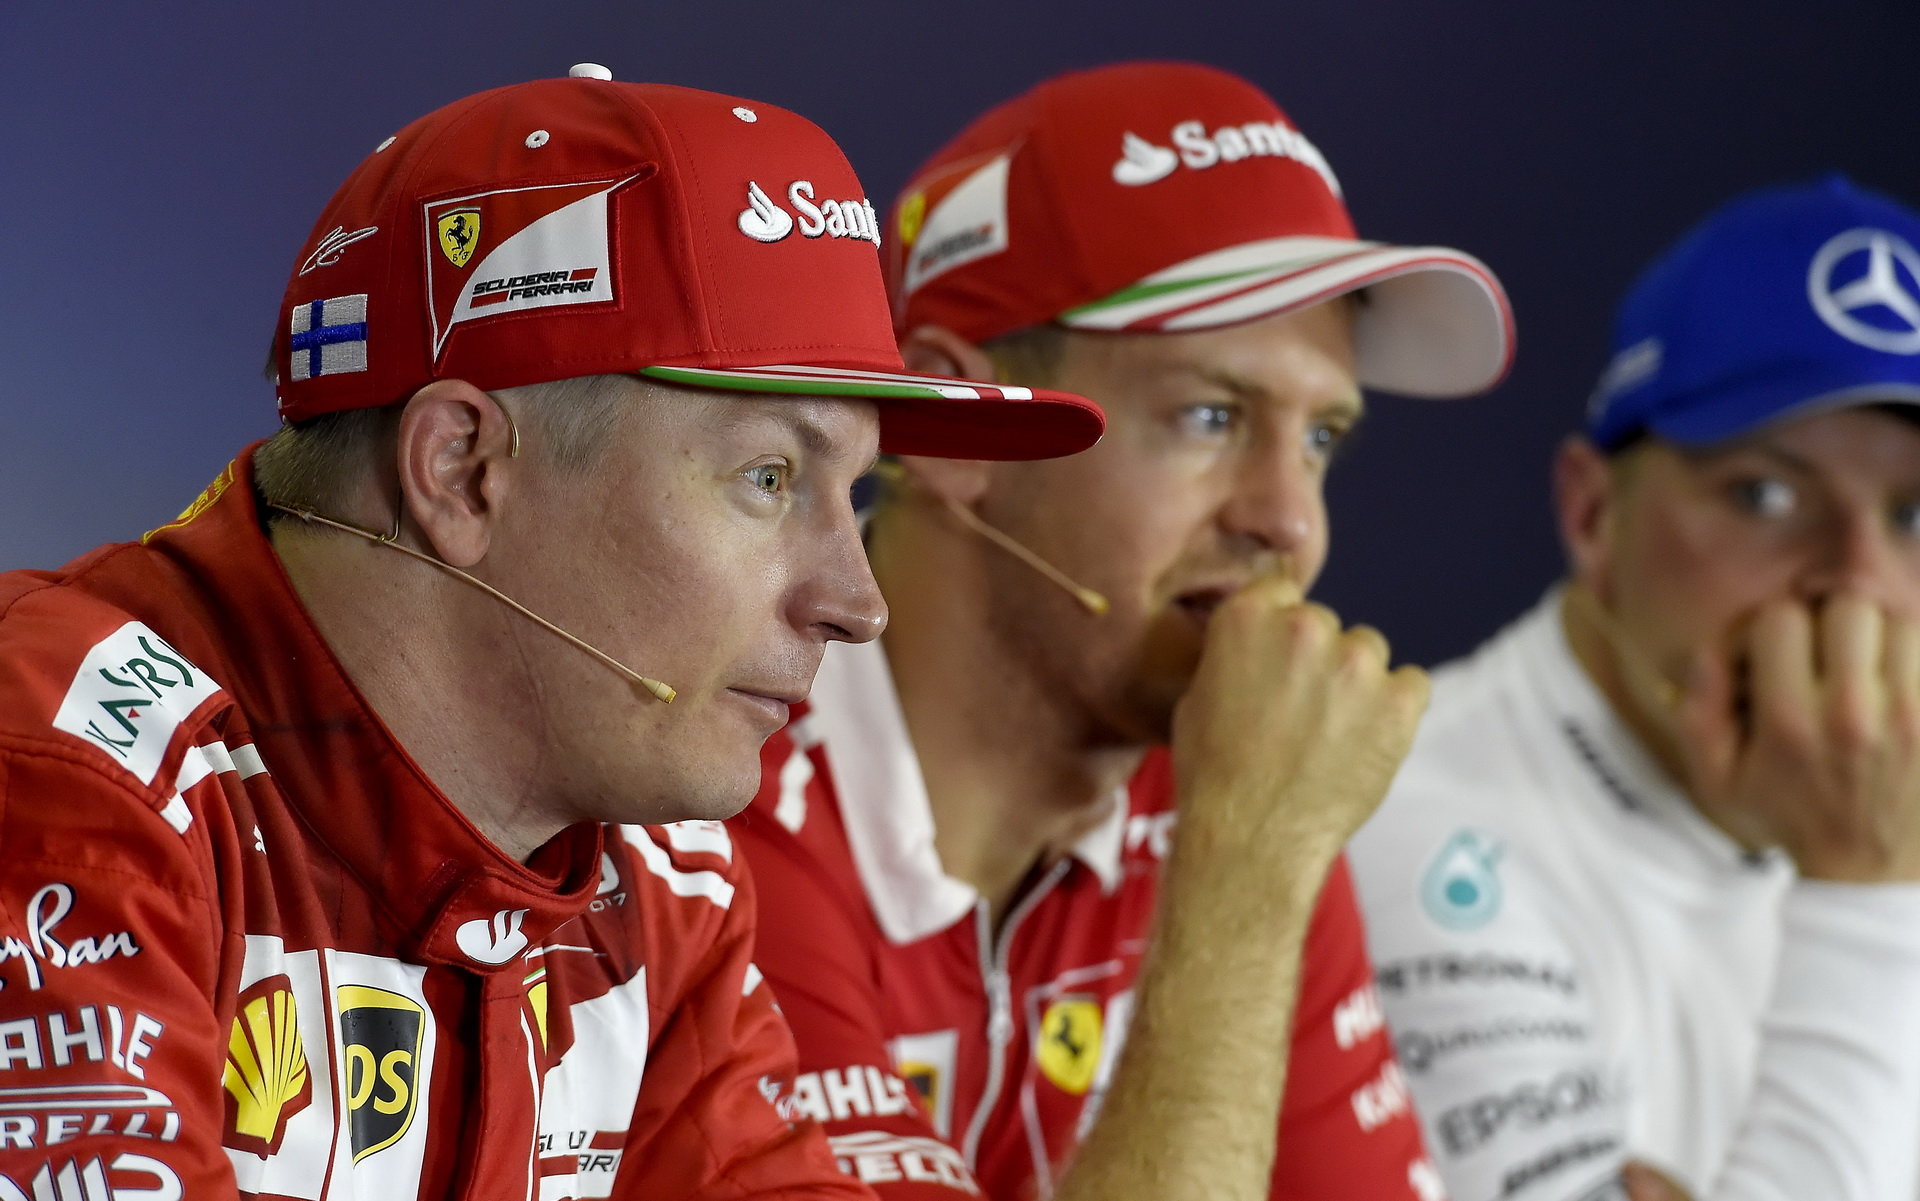 Kimi Räikkönen a Sebastian Vettel na tiskovce po závodě v Maďarsku